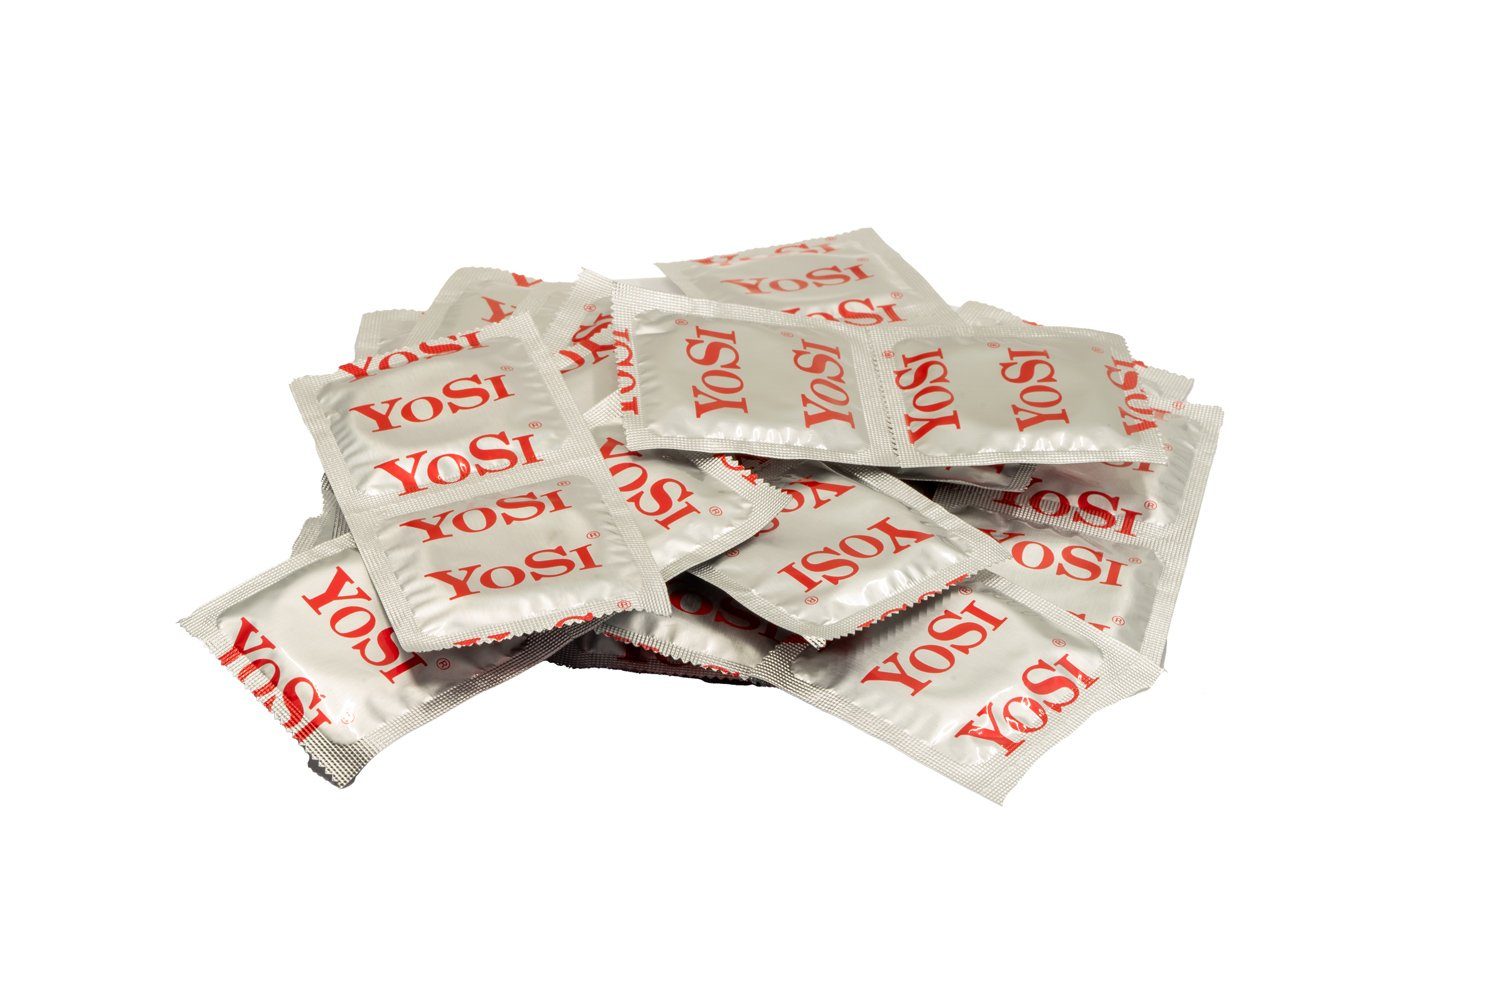 YOSI Kondome 50er Ultra Thin - extra dünn, 53mm, pro Beutel 50 Stück - glatt, mit Reservoir, transparent & zylindrisch